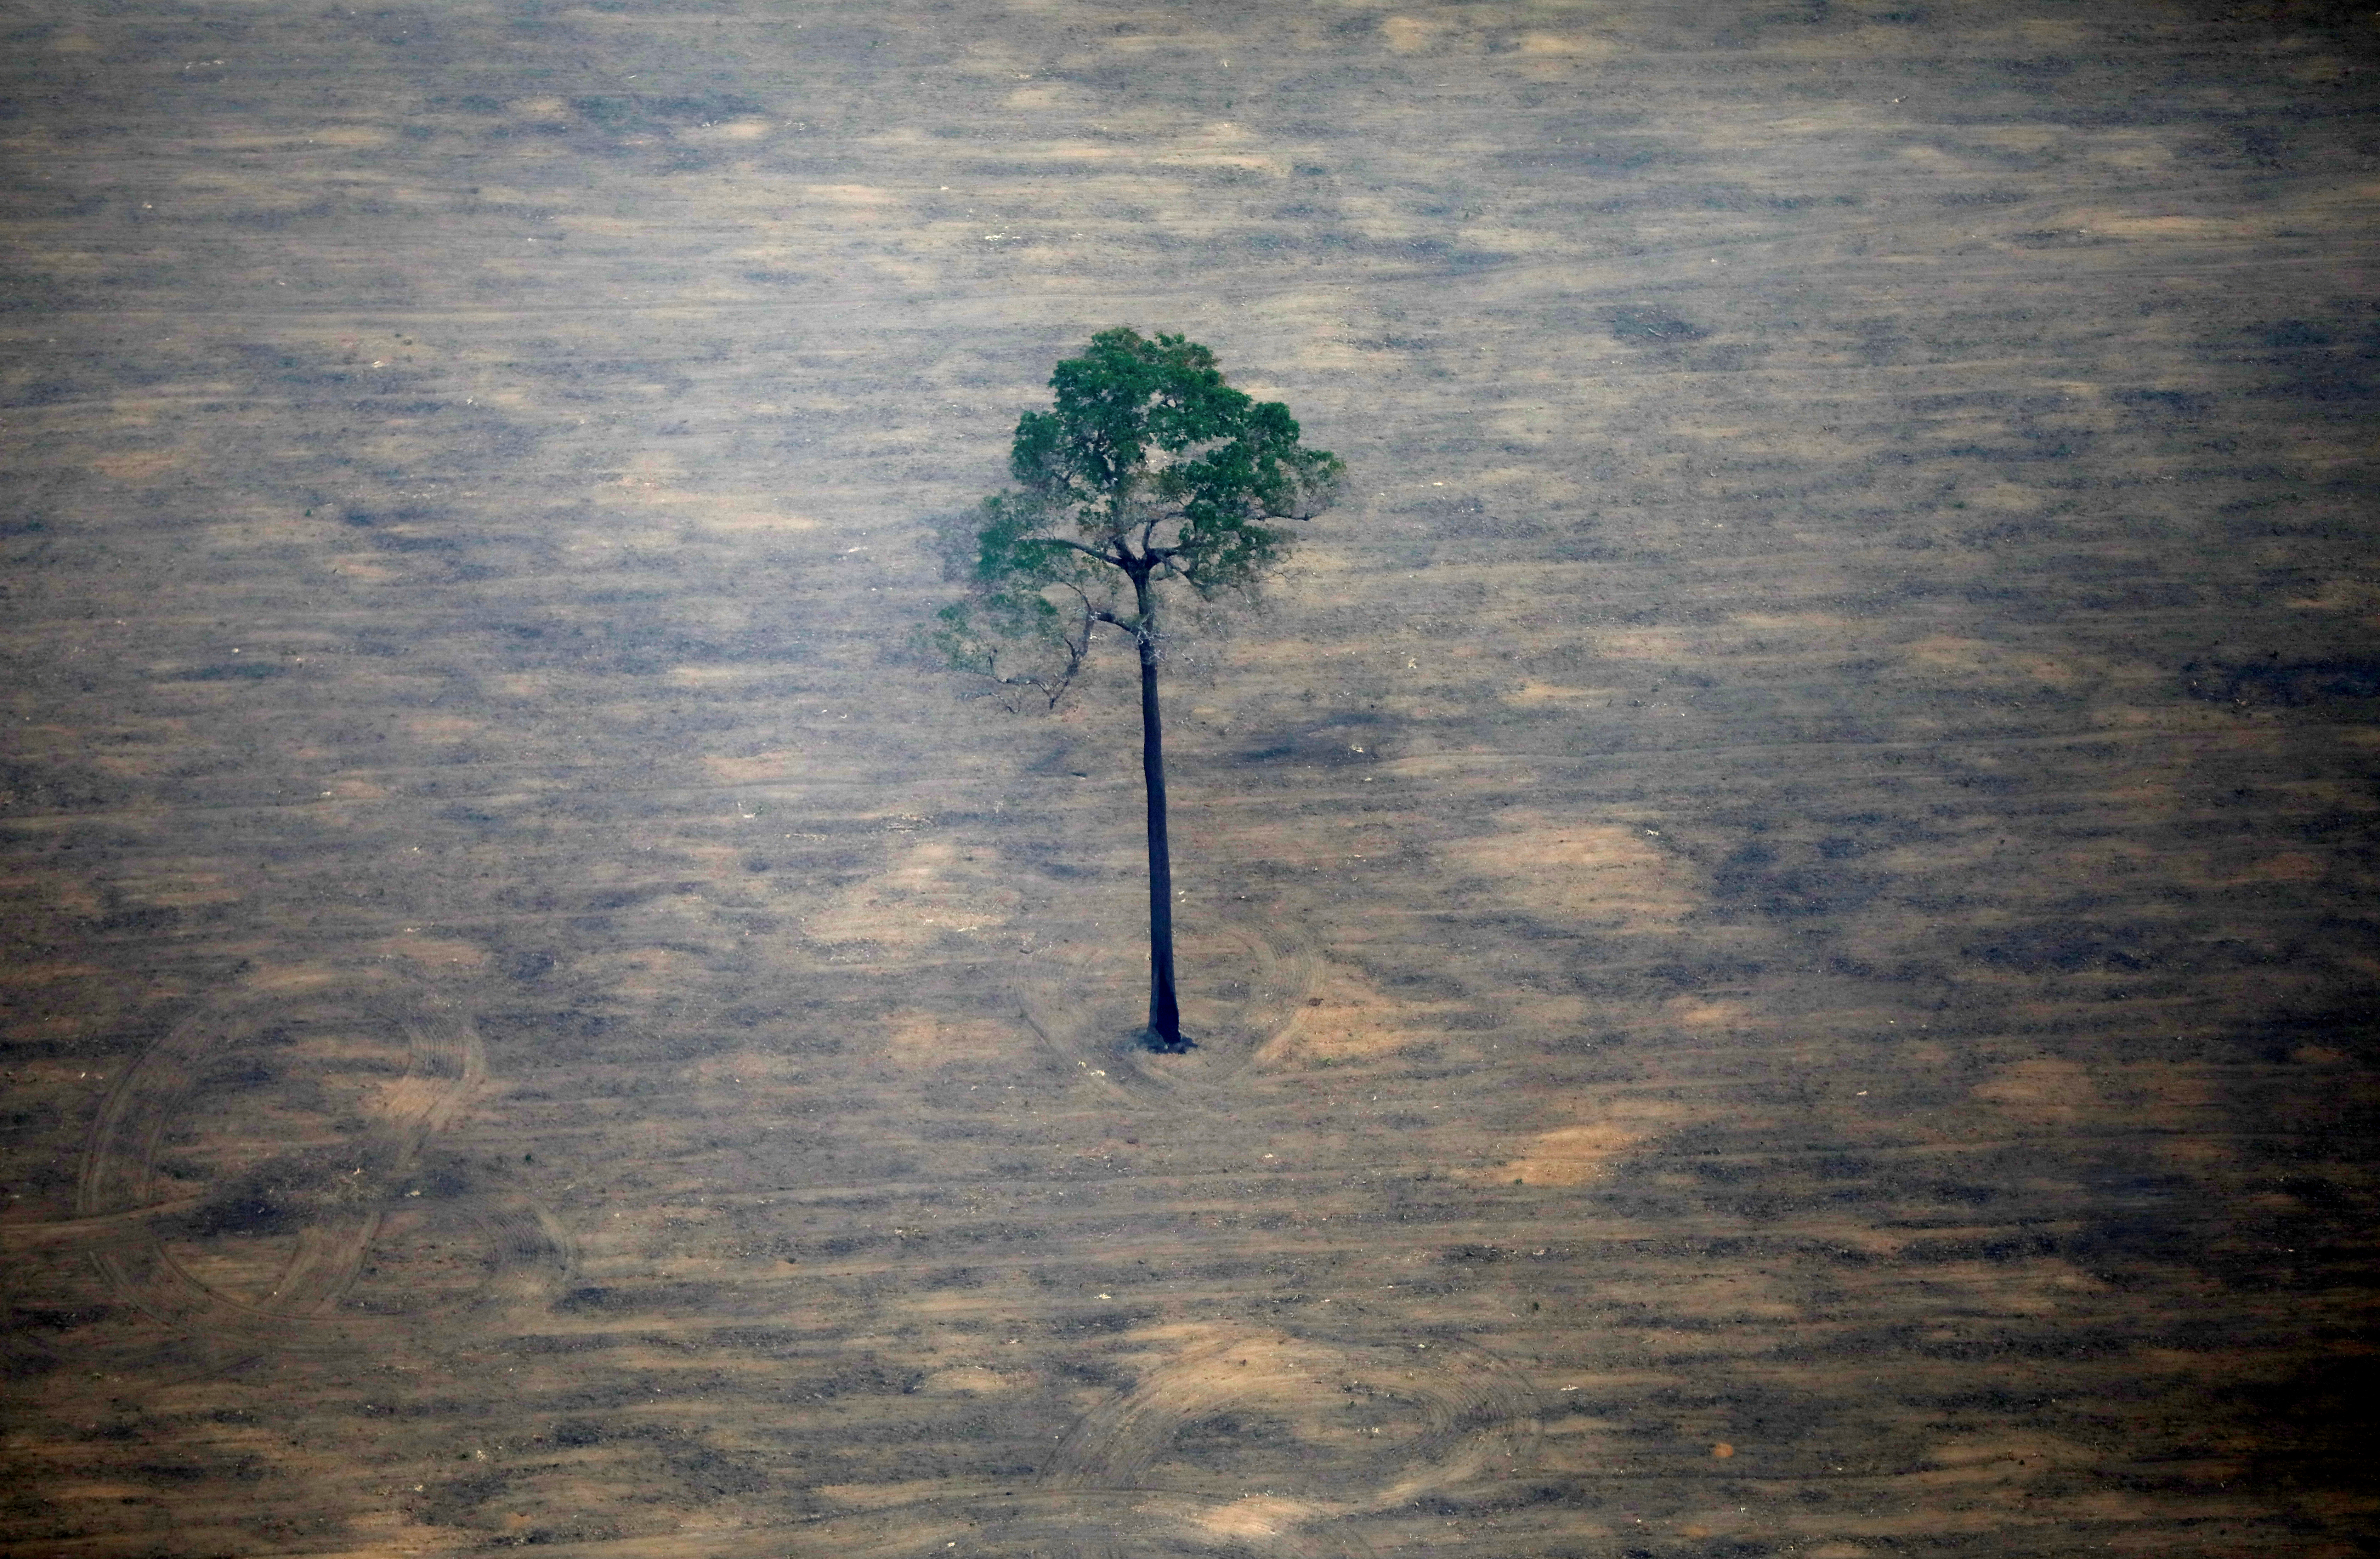 La déforestation stoppée en moins de dix ans, promettent les pays représentant 85% des forêts mondiales